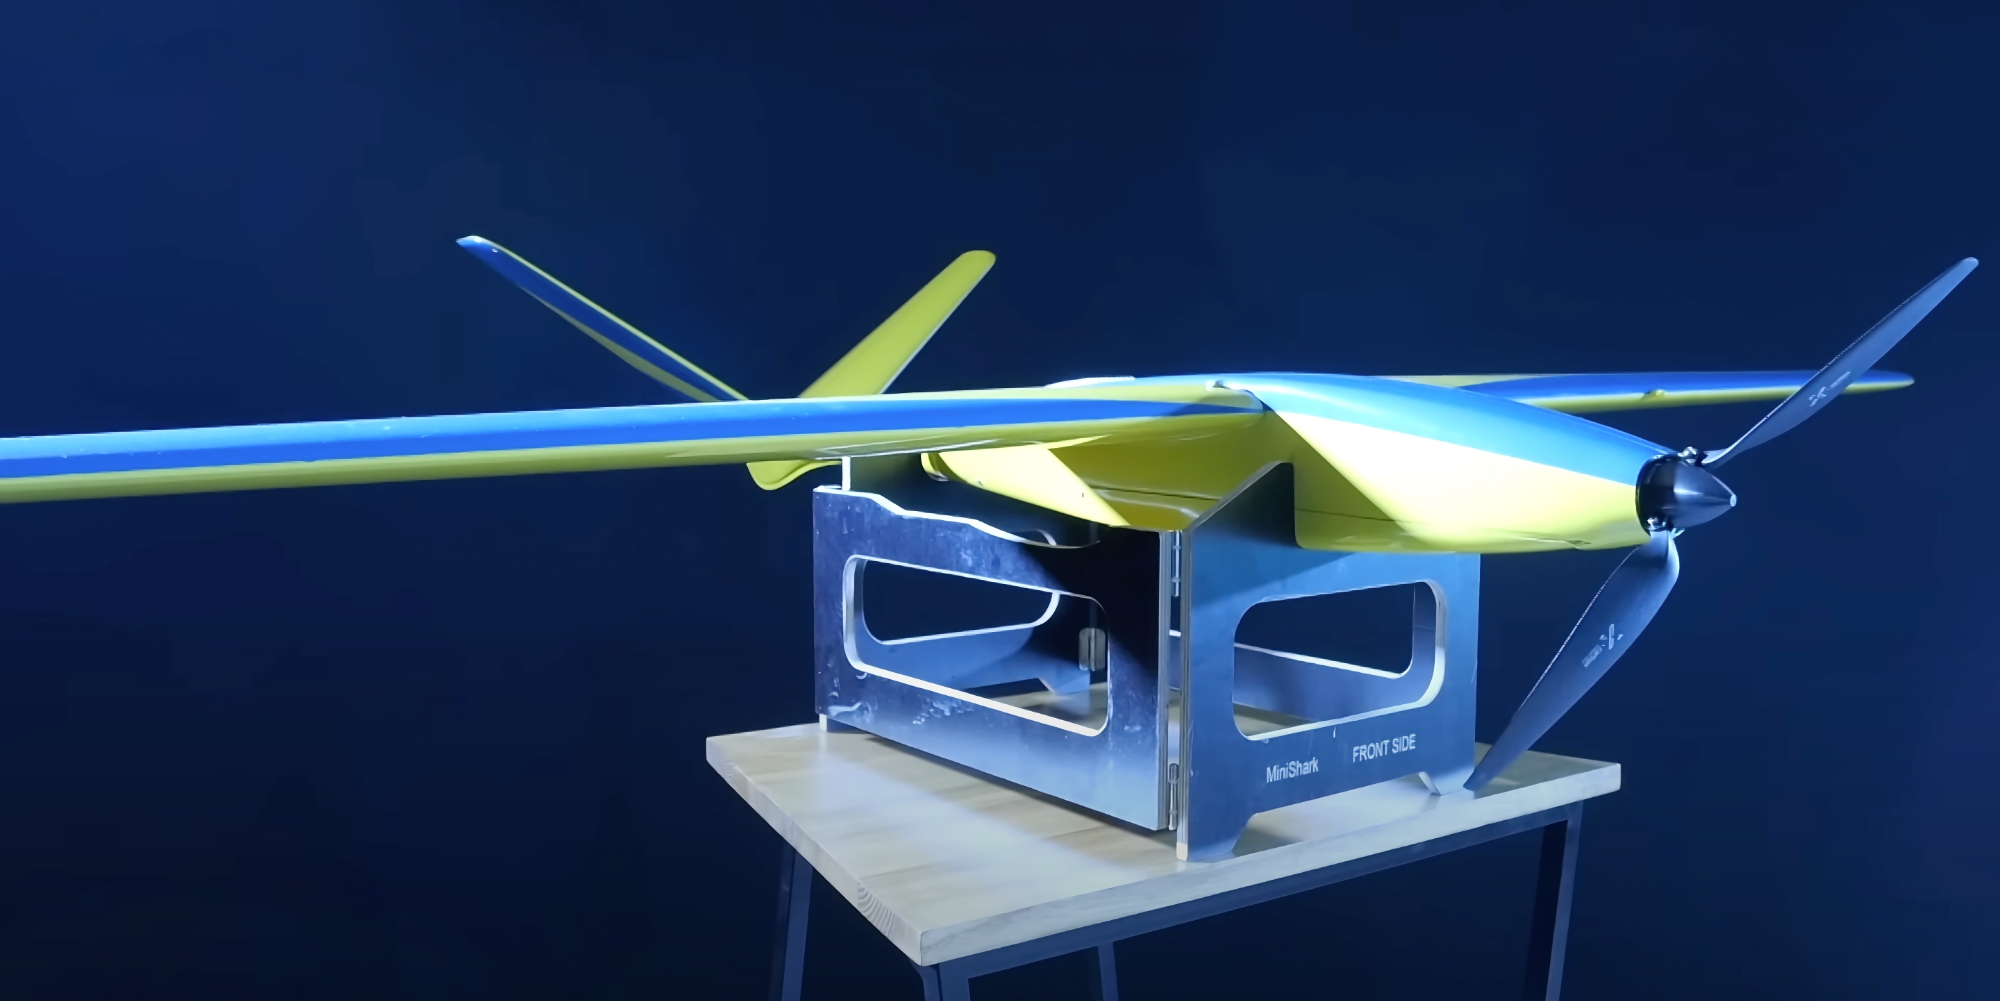 Ukrspecsystems presenta MiniShark: un UAV da ricognizione compatto che può volare fino a 35 km a 120 km/h